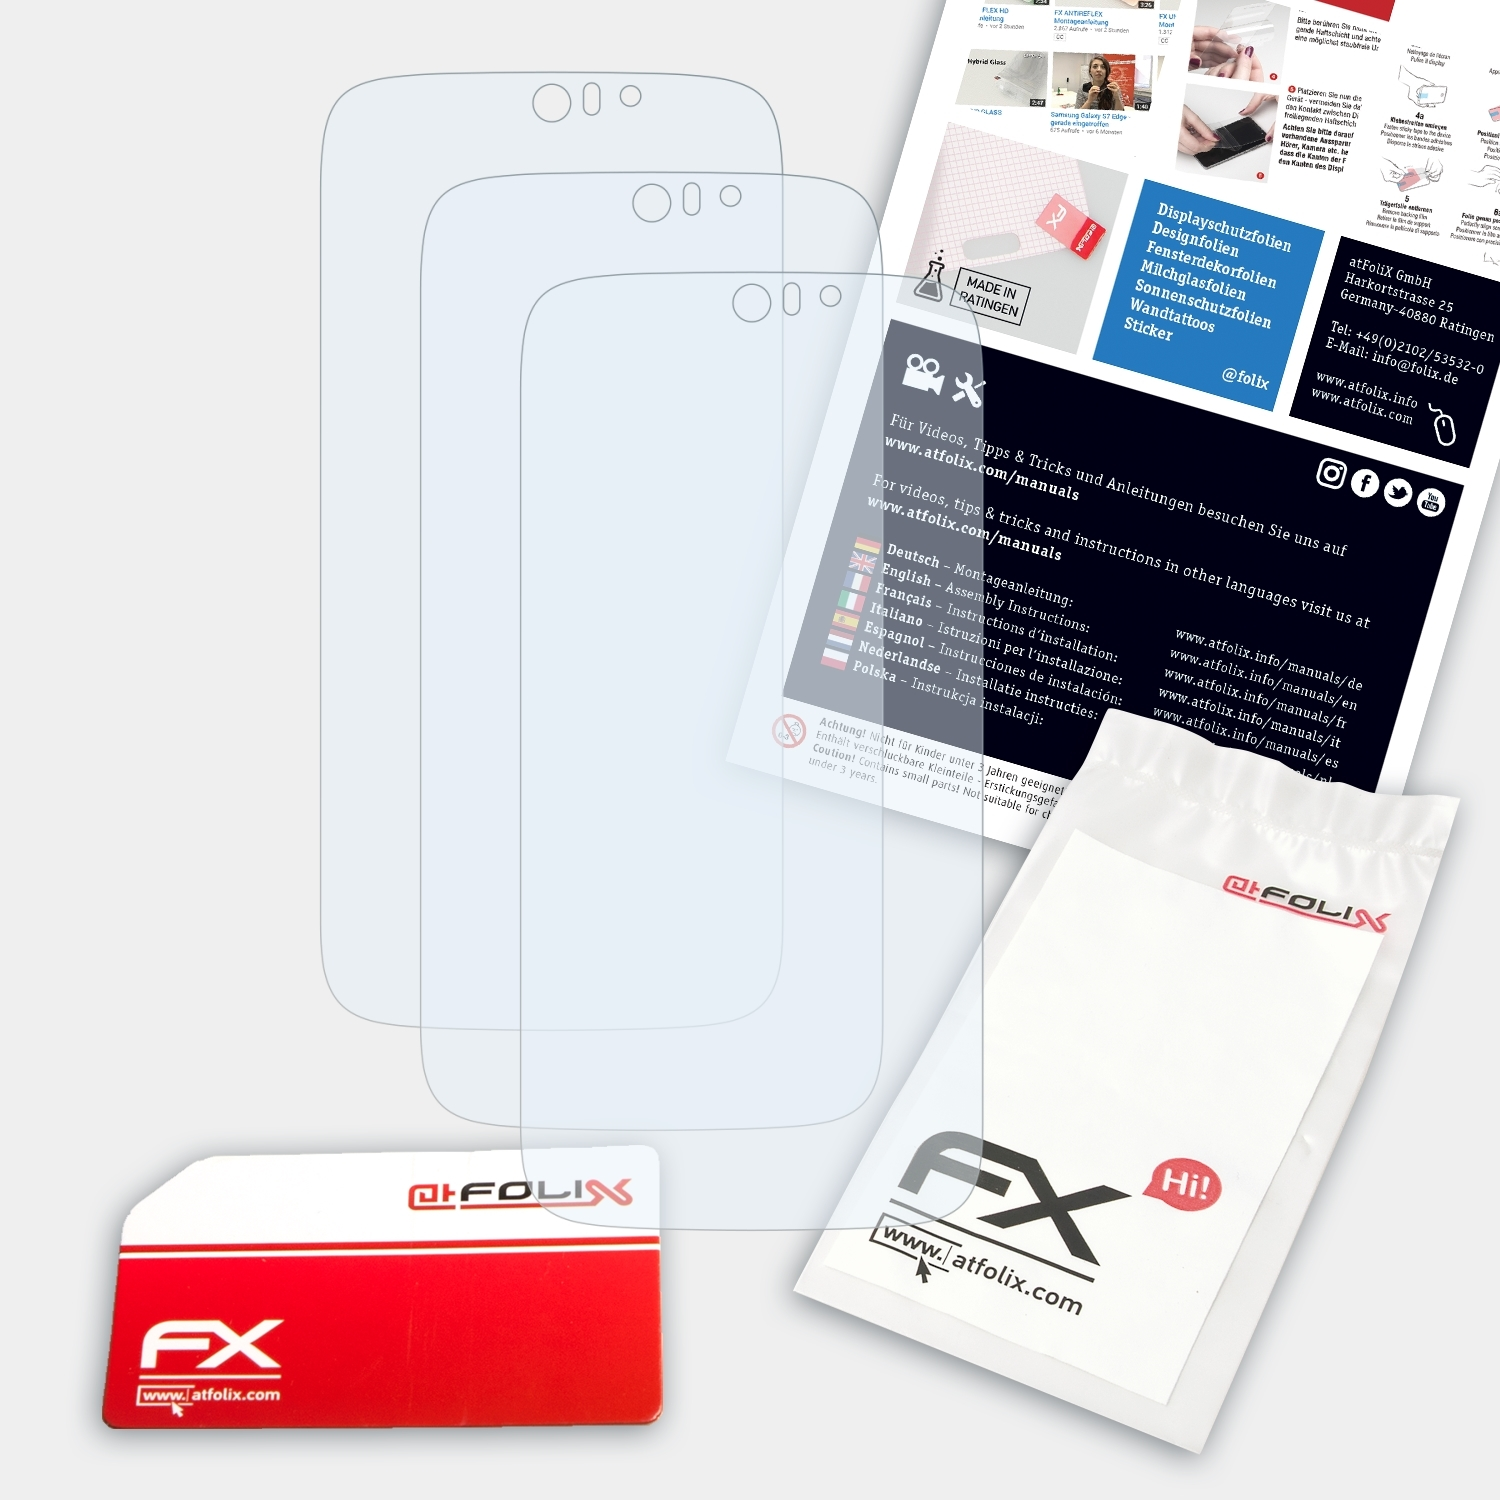 (Plus)) Acer ATFOLIX Jade Liquid Z Displayschutz(für FX-Clear 3x